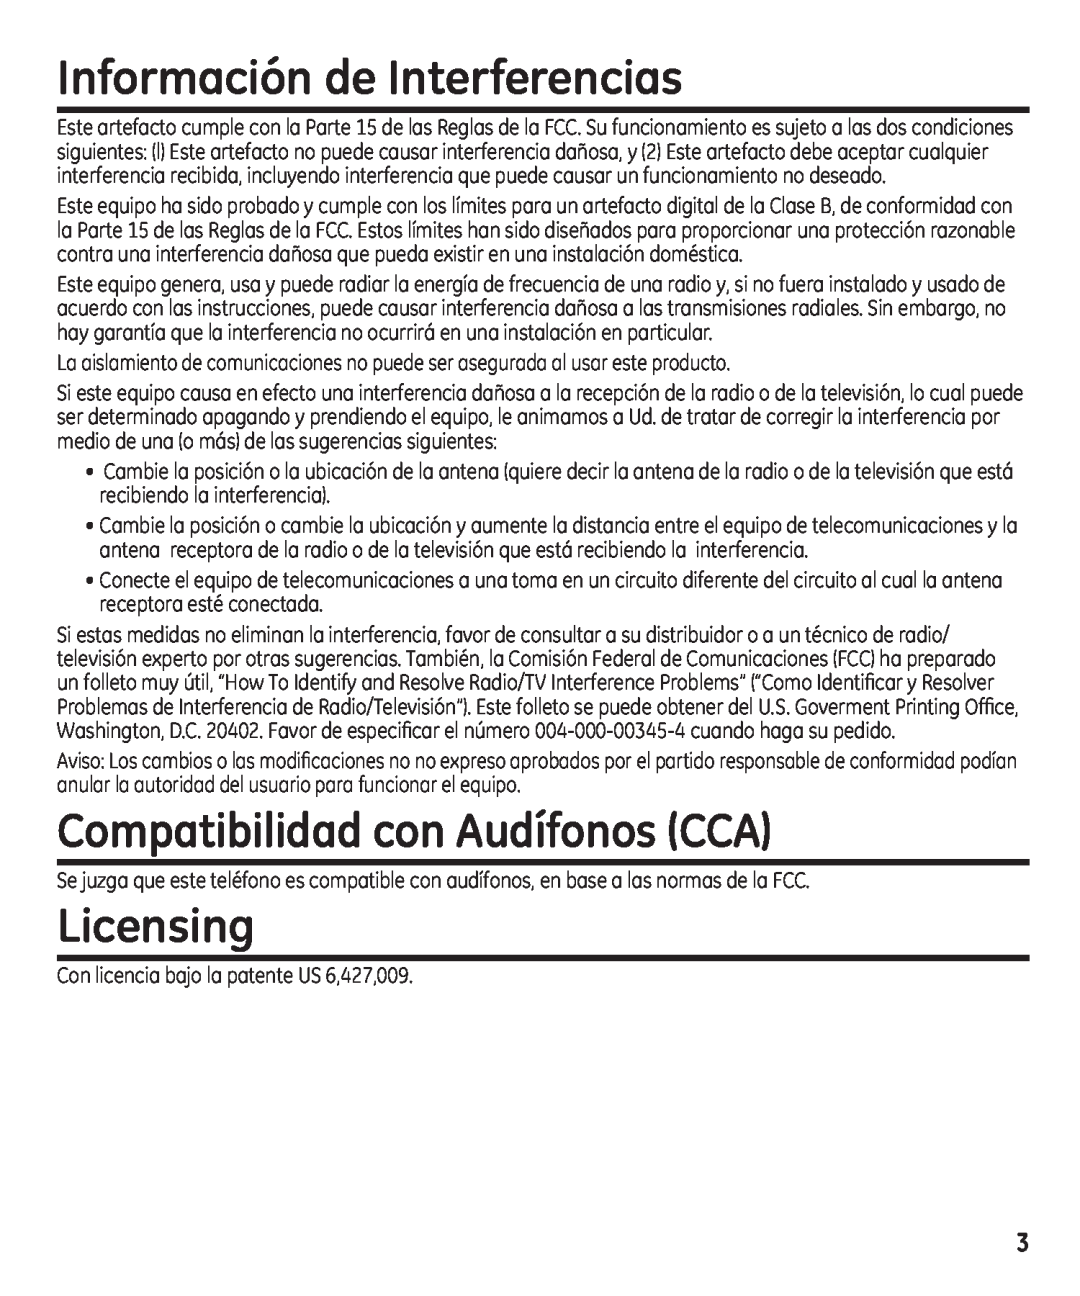 GE 29861 manual Información de Interferencias, Compatibilidad con Audífonos CCA, Licensing 